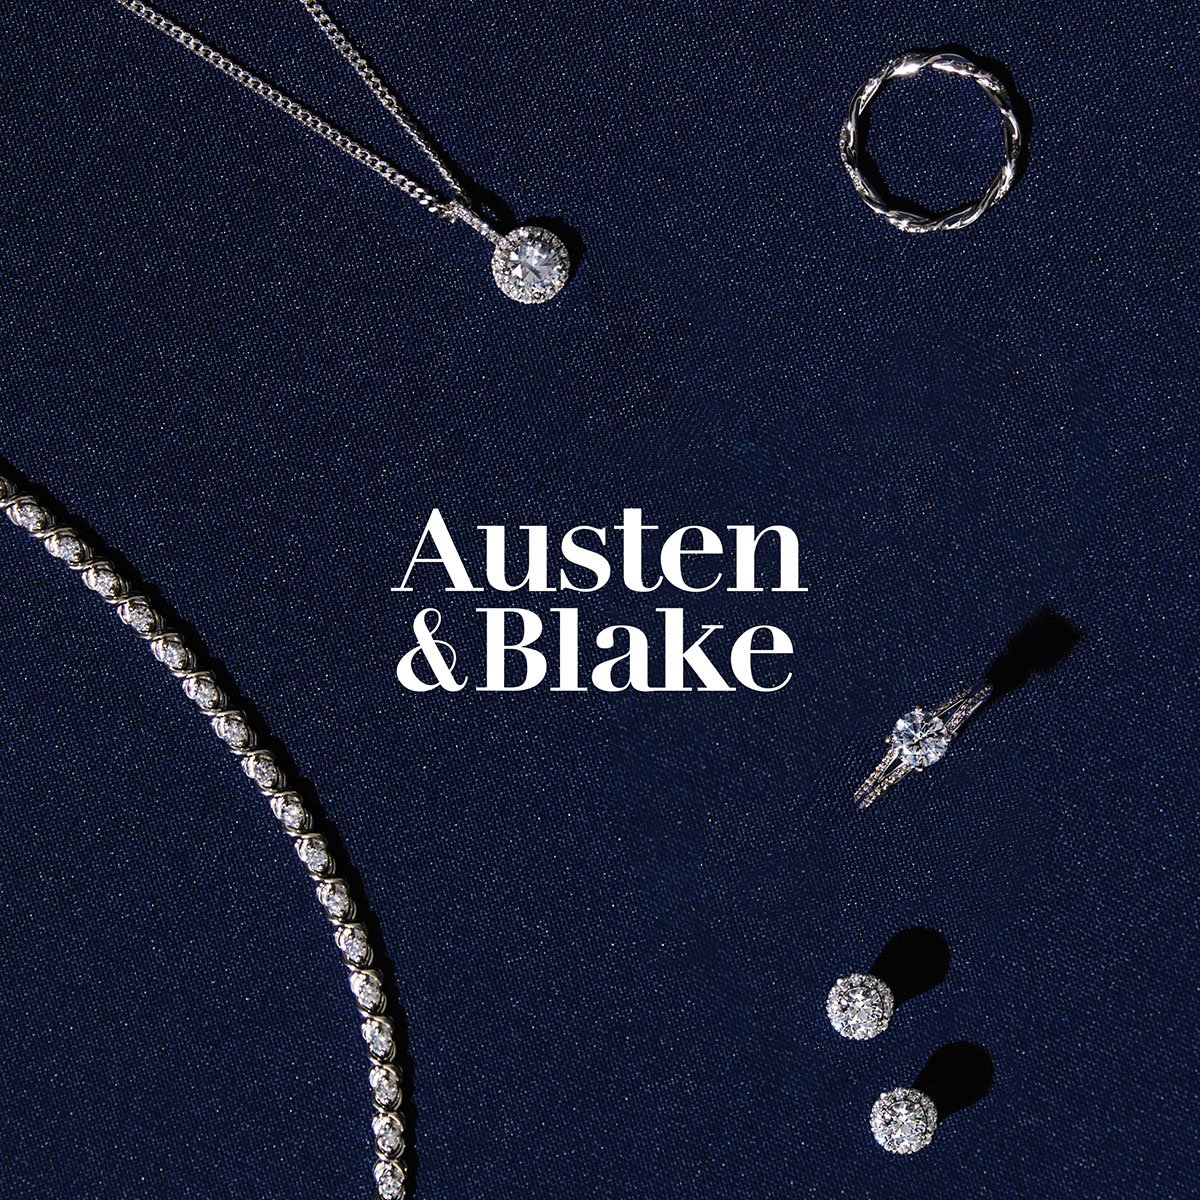 Austen & Blake